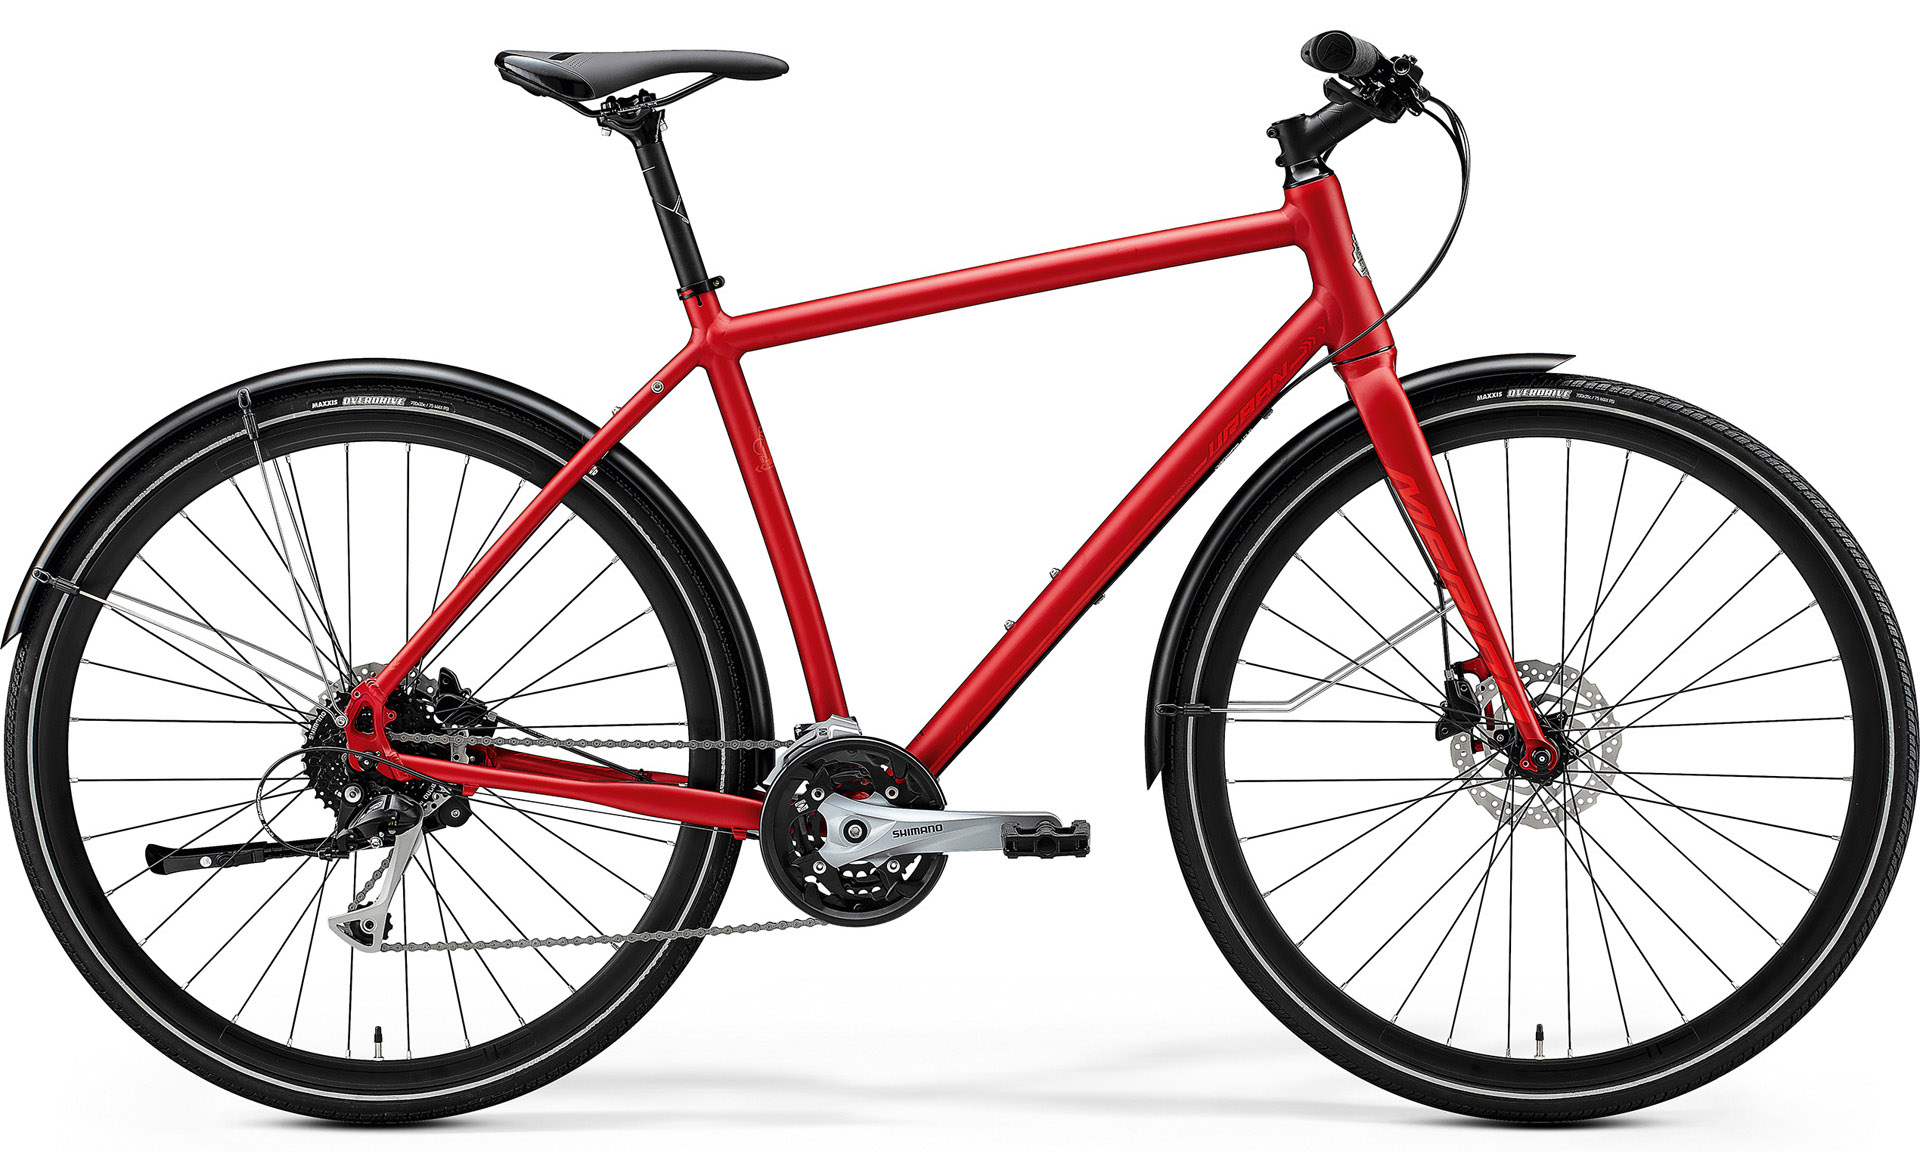  Отзывы о Городском велосипеде Merida Crossway Urban 100 2020